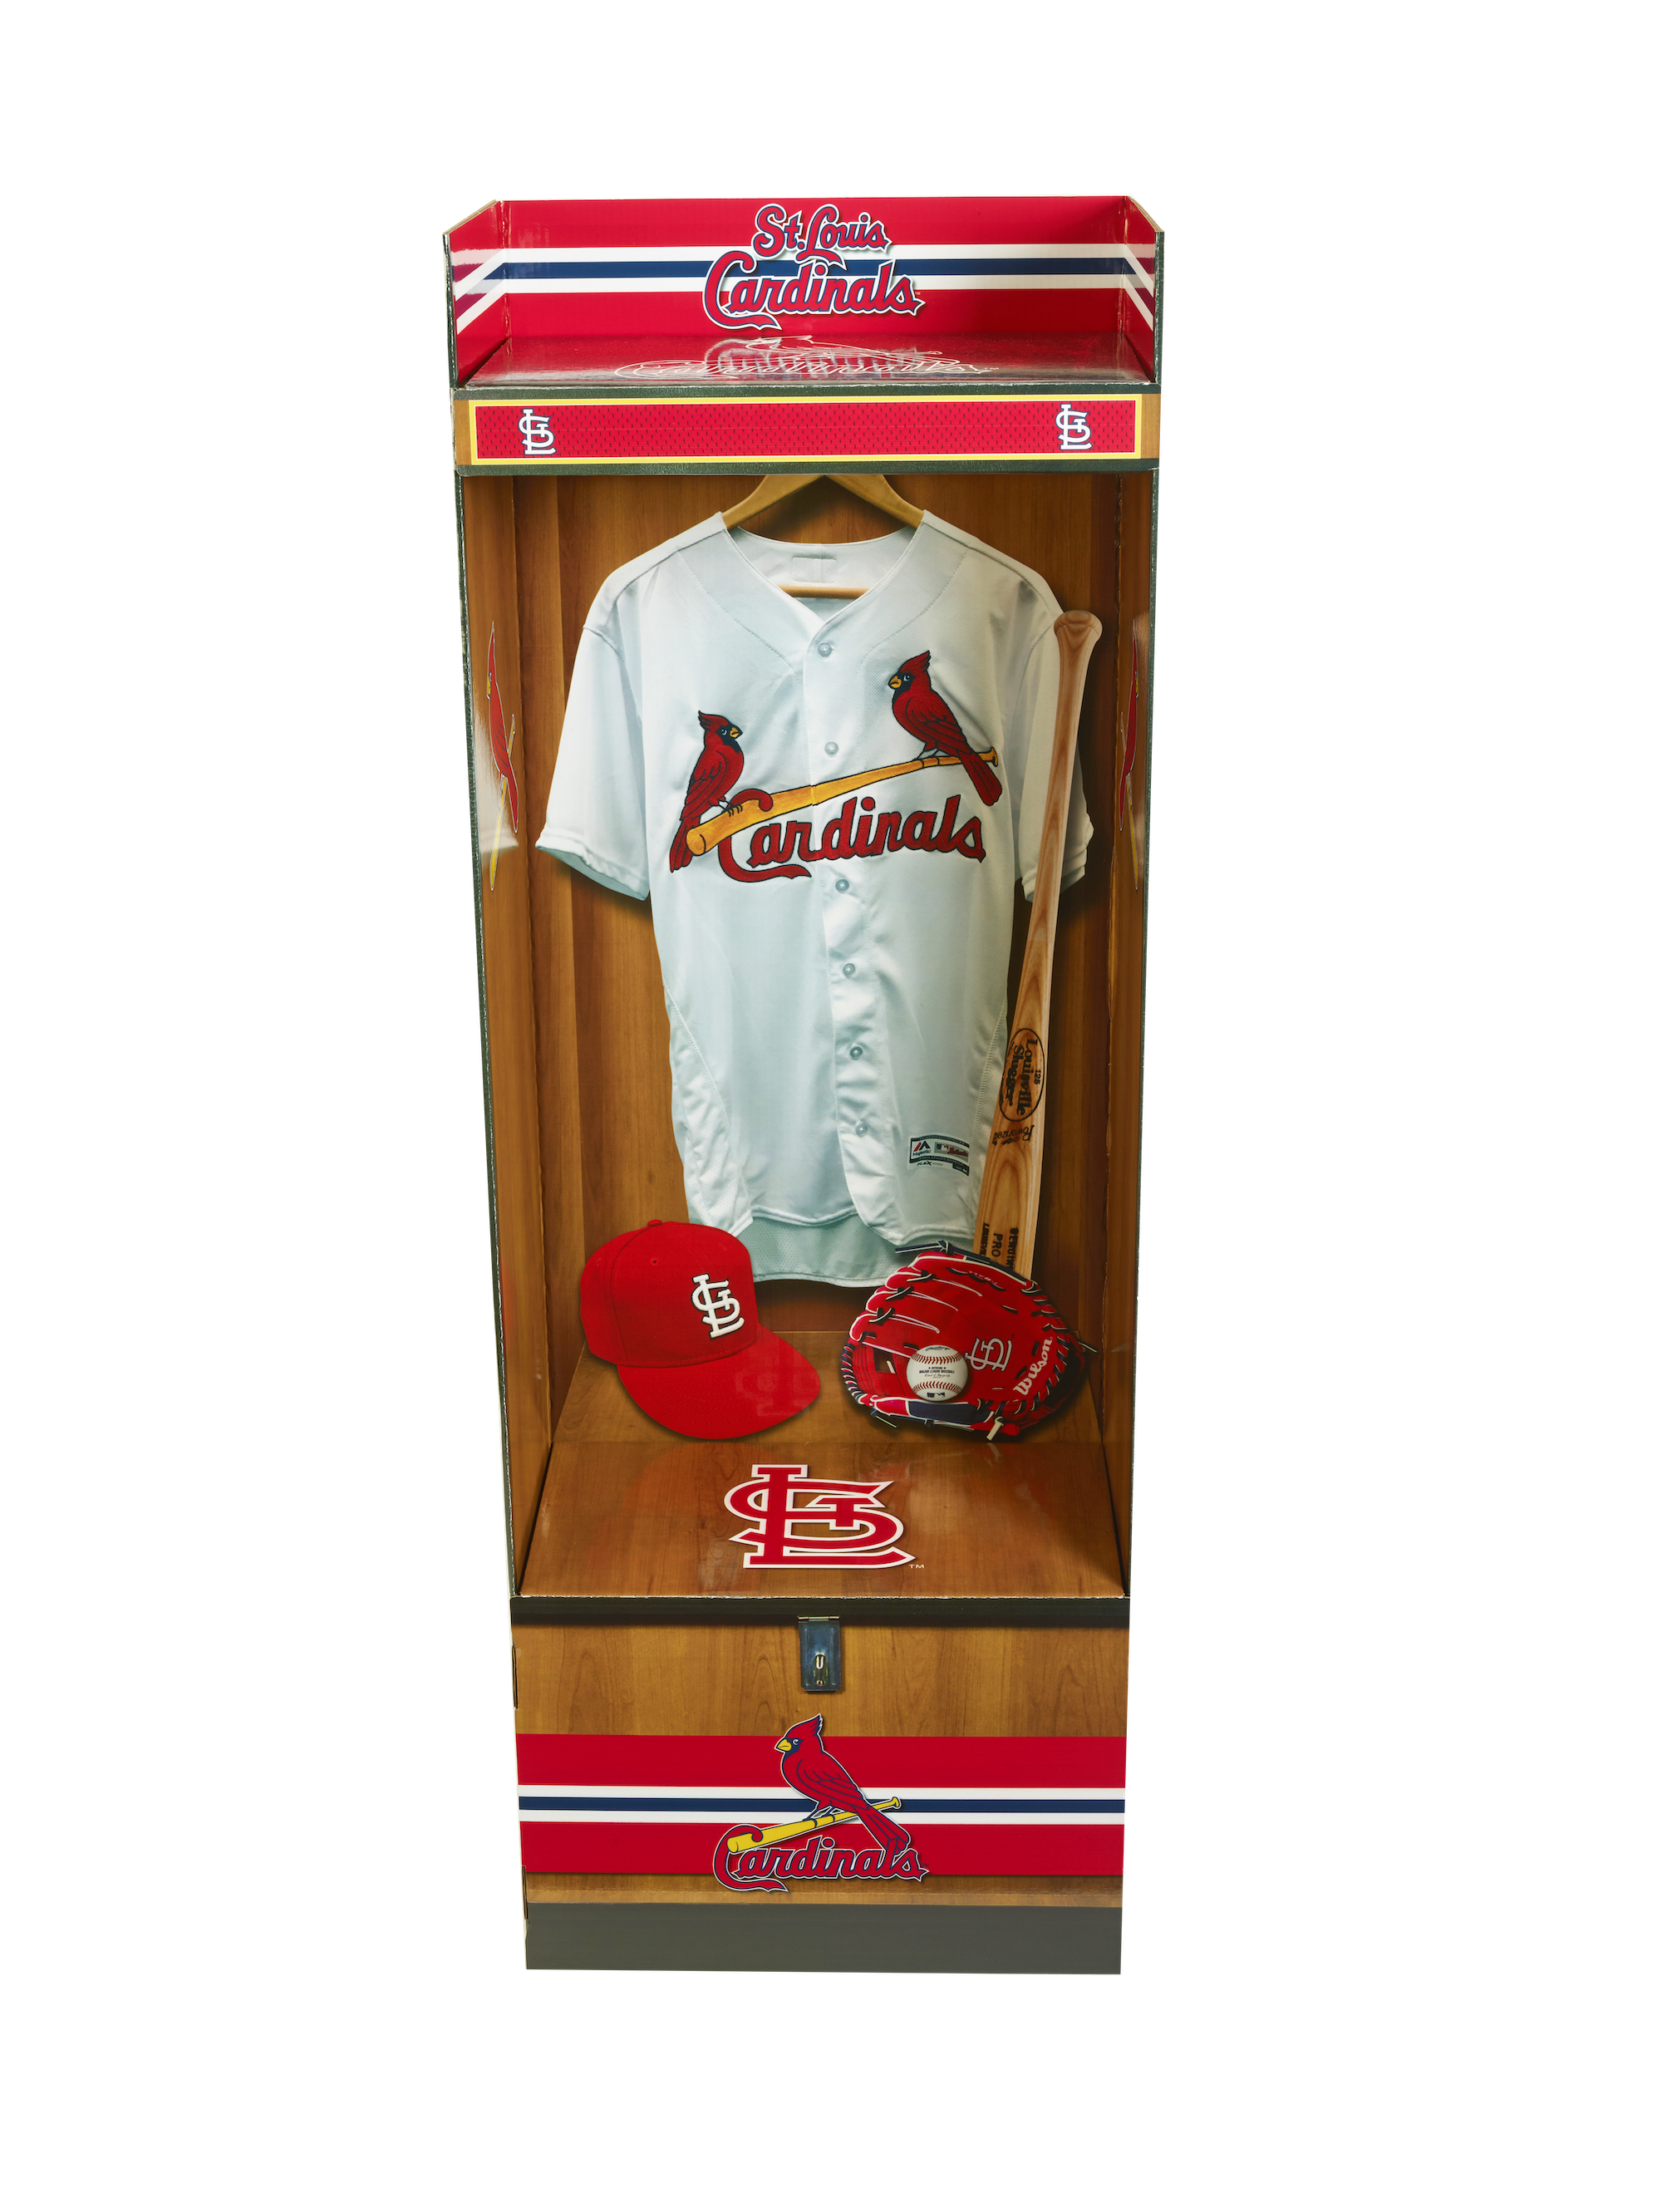 St. Louis Cardinals 3-pc Gift Set, 1 unit - Fry's Food Stores